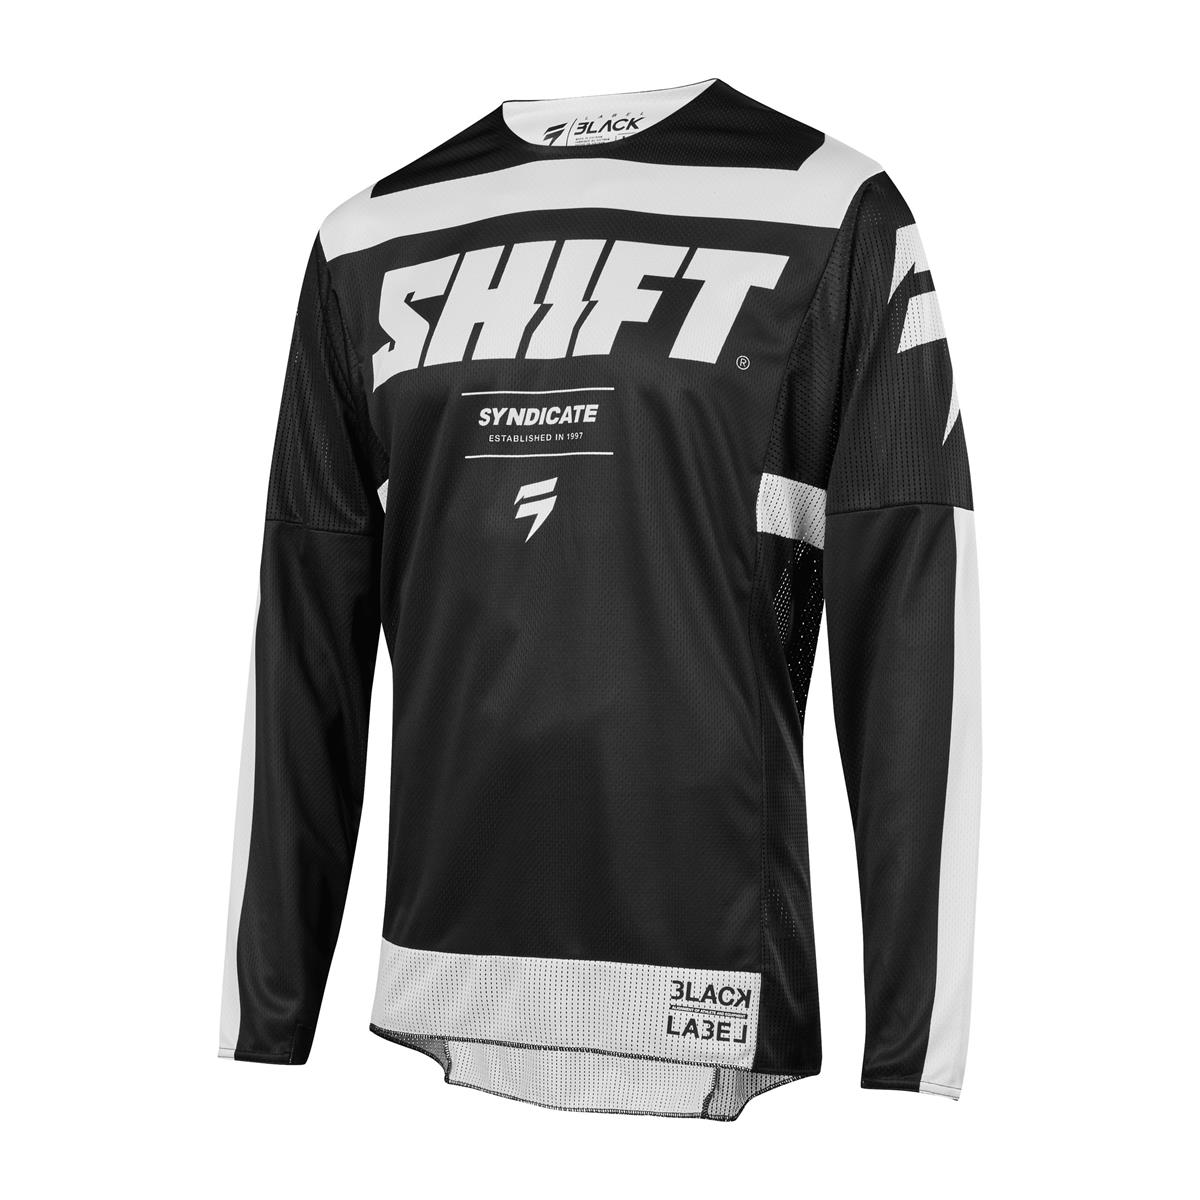 Shift Jersey 3lack Label Strike Black/White